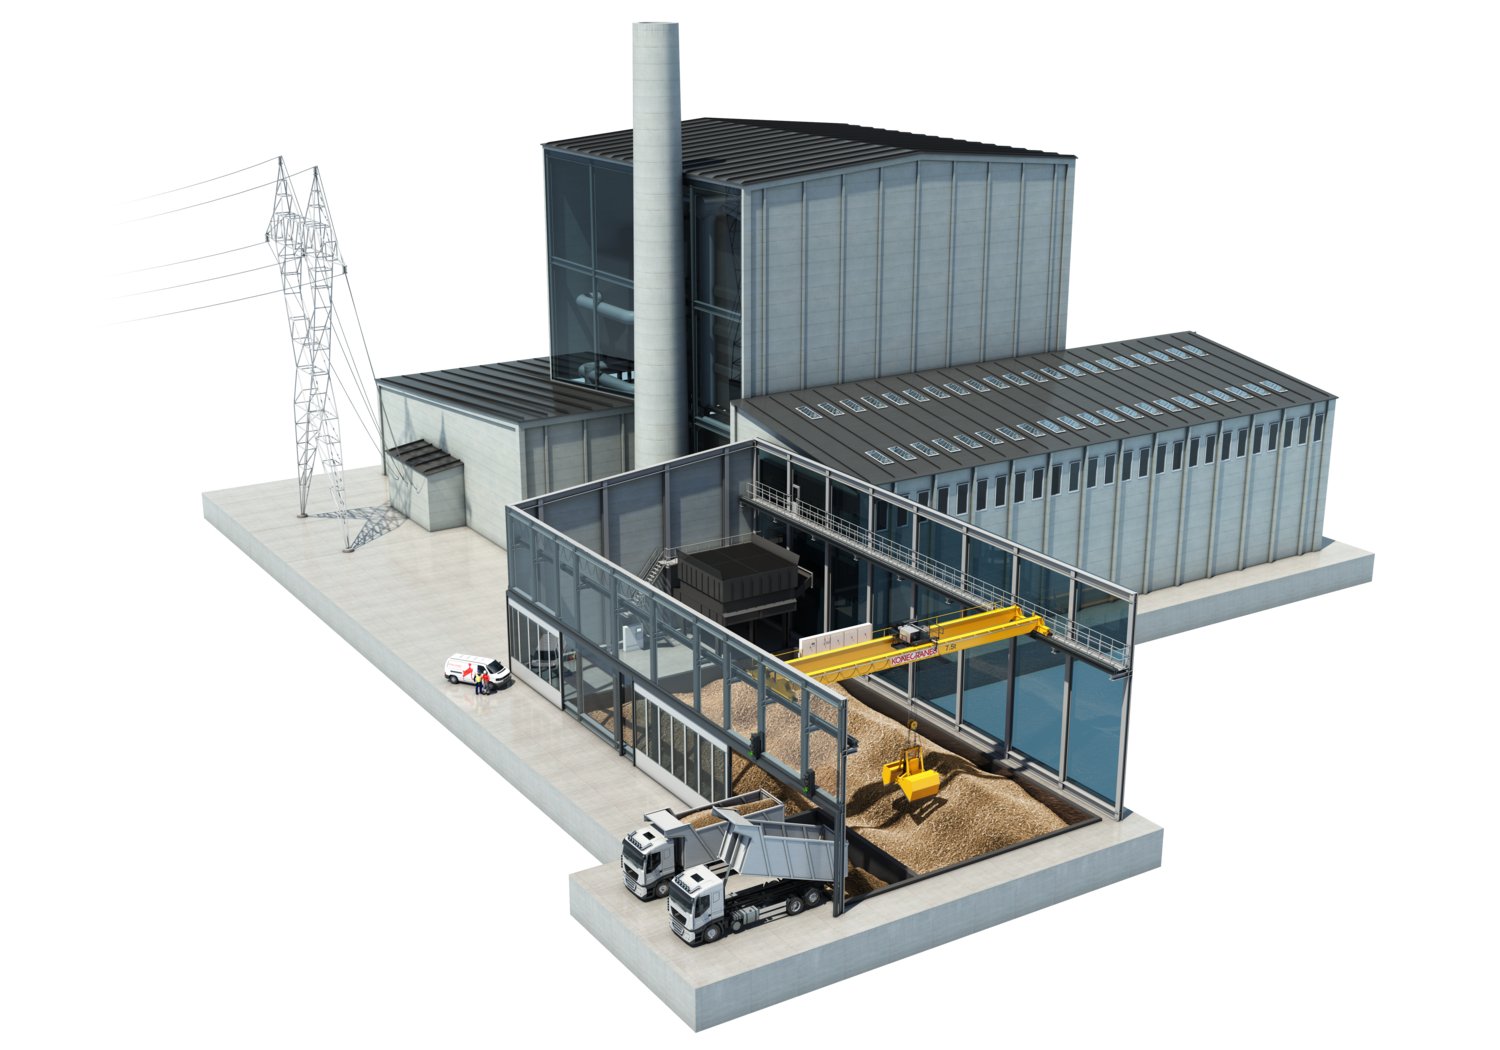 Biomass plant layout